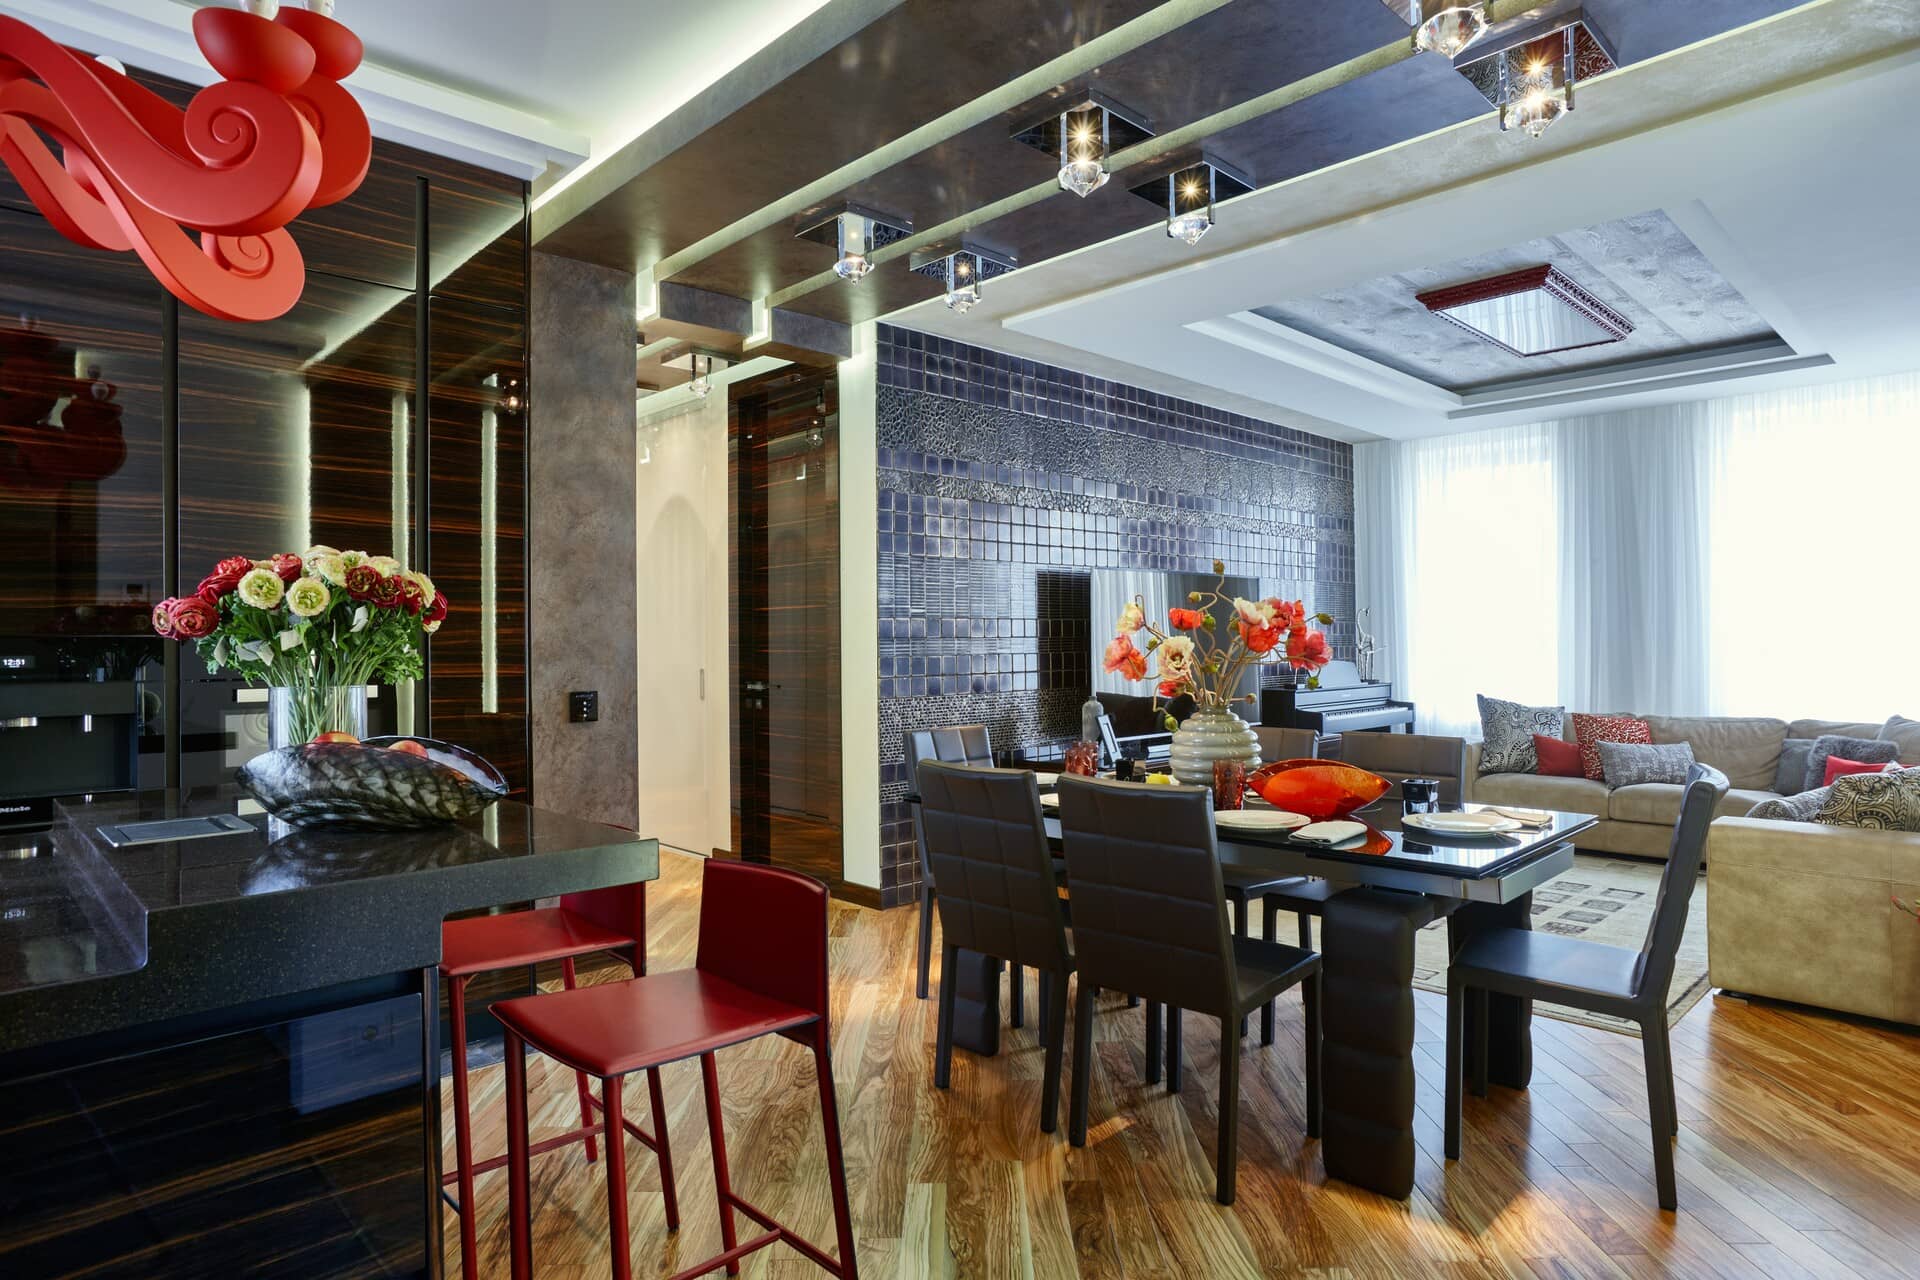 Гостиная и кухня соединены вместе для современного интерьера